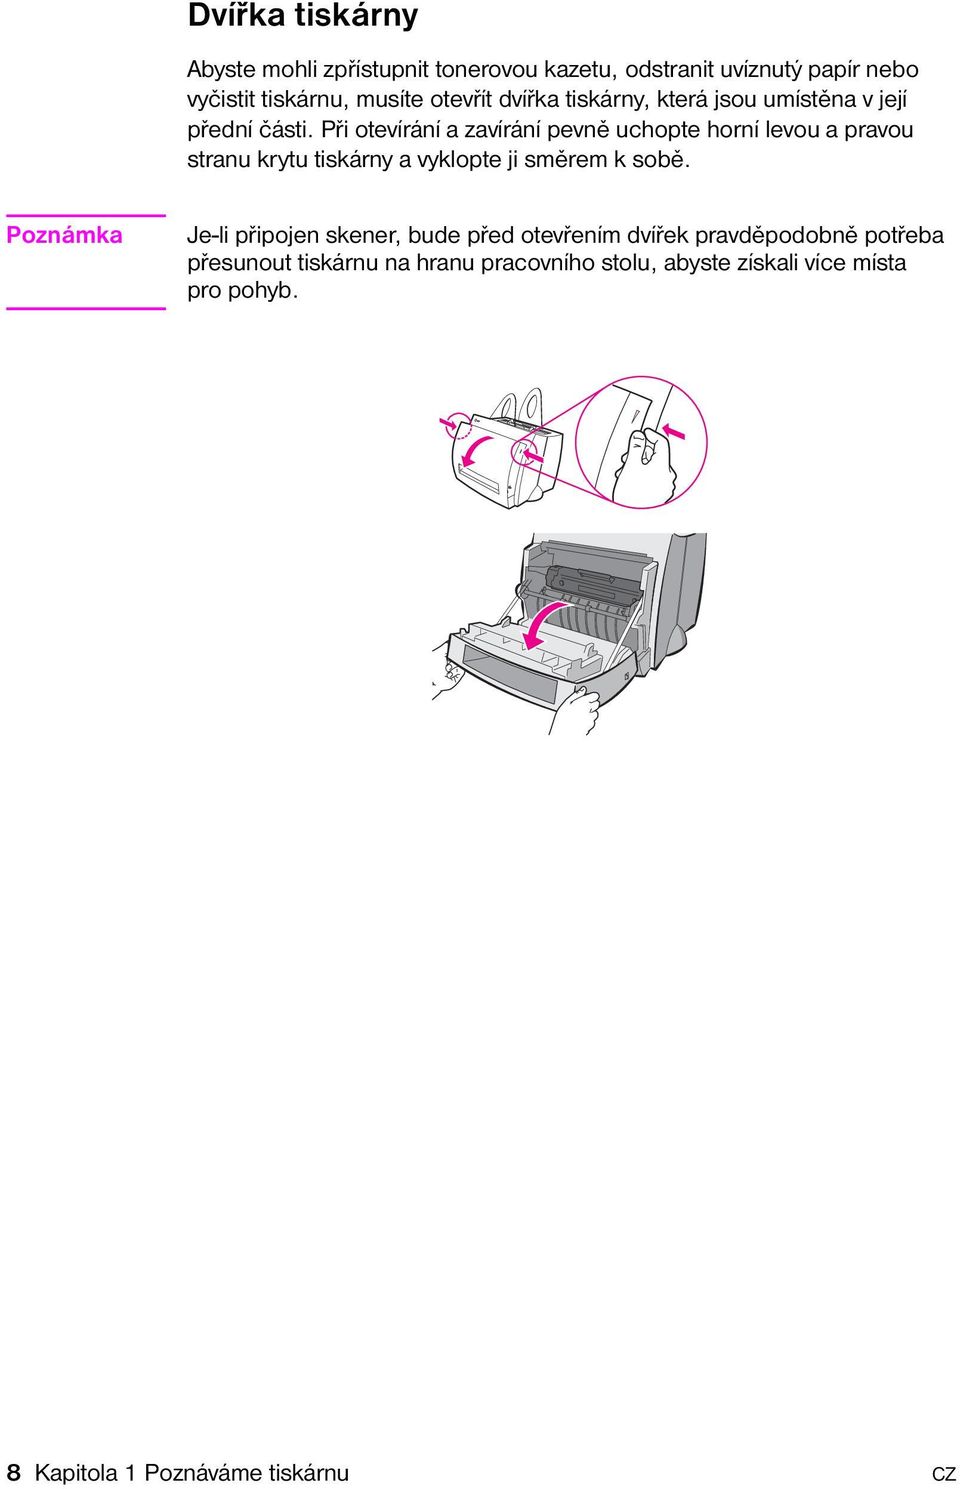 Při otevírání a zavírání pevně uchopte horní levou a pravou stranu krytu tiskárny a vyklopte ji směrem k sobě.